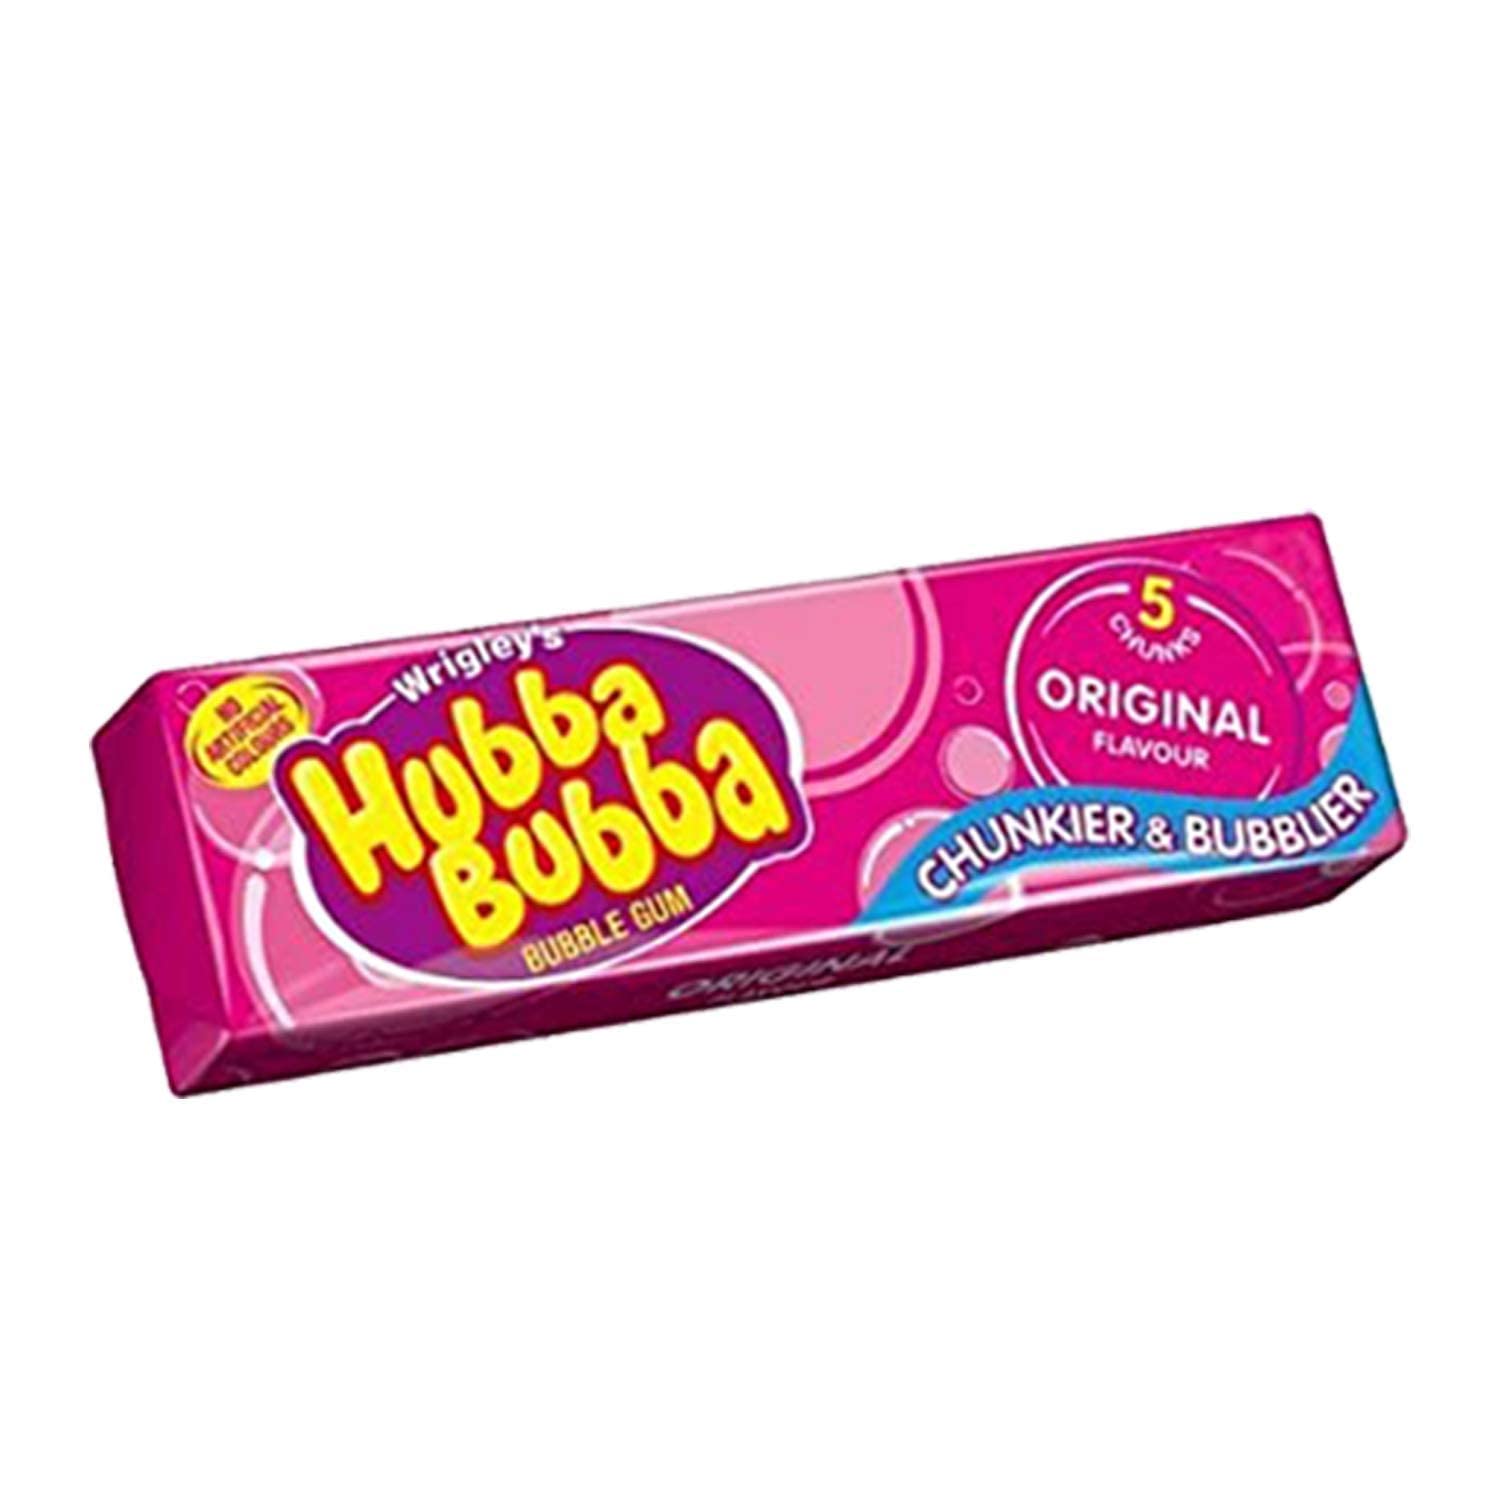 Hubba Hubba Original Bubble Gum